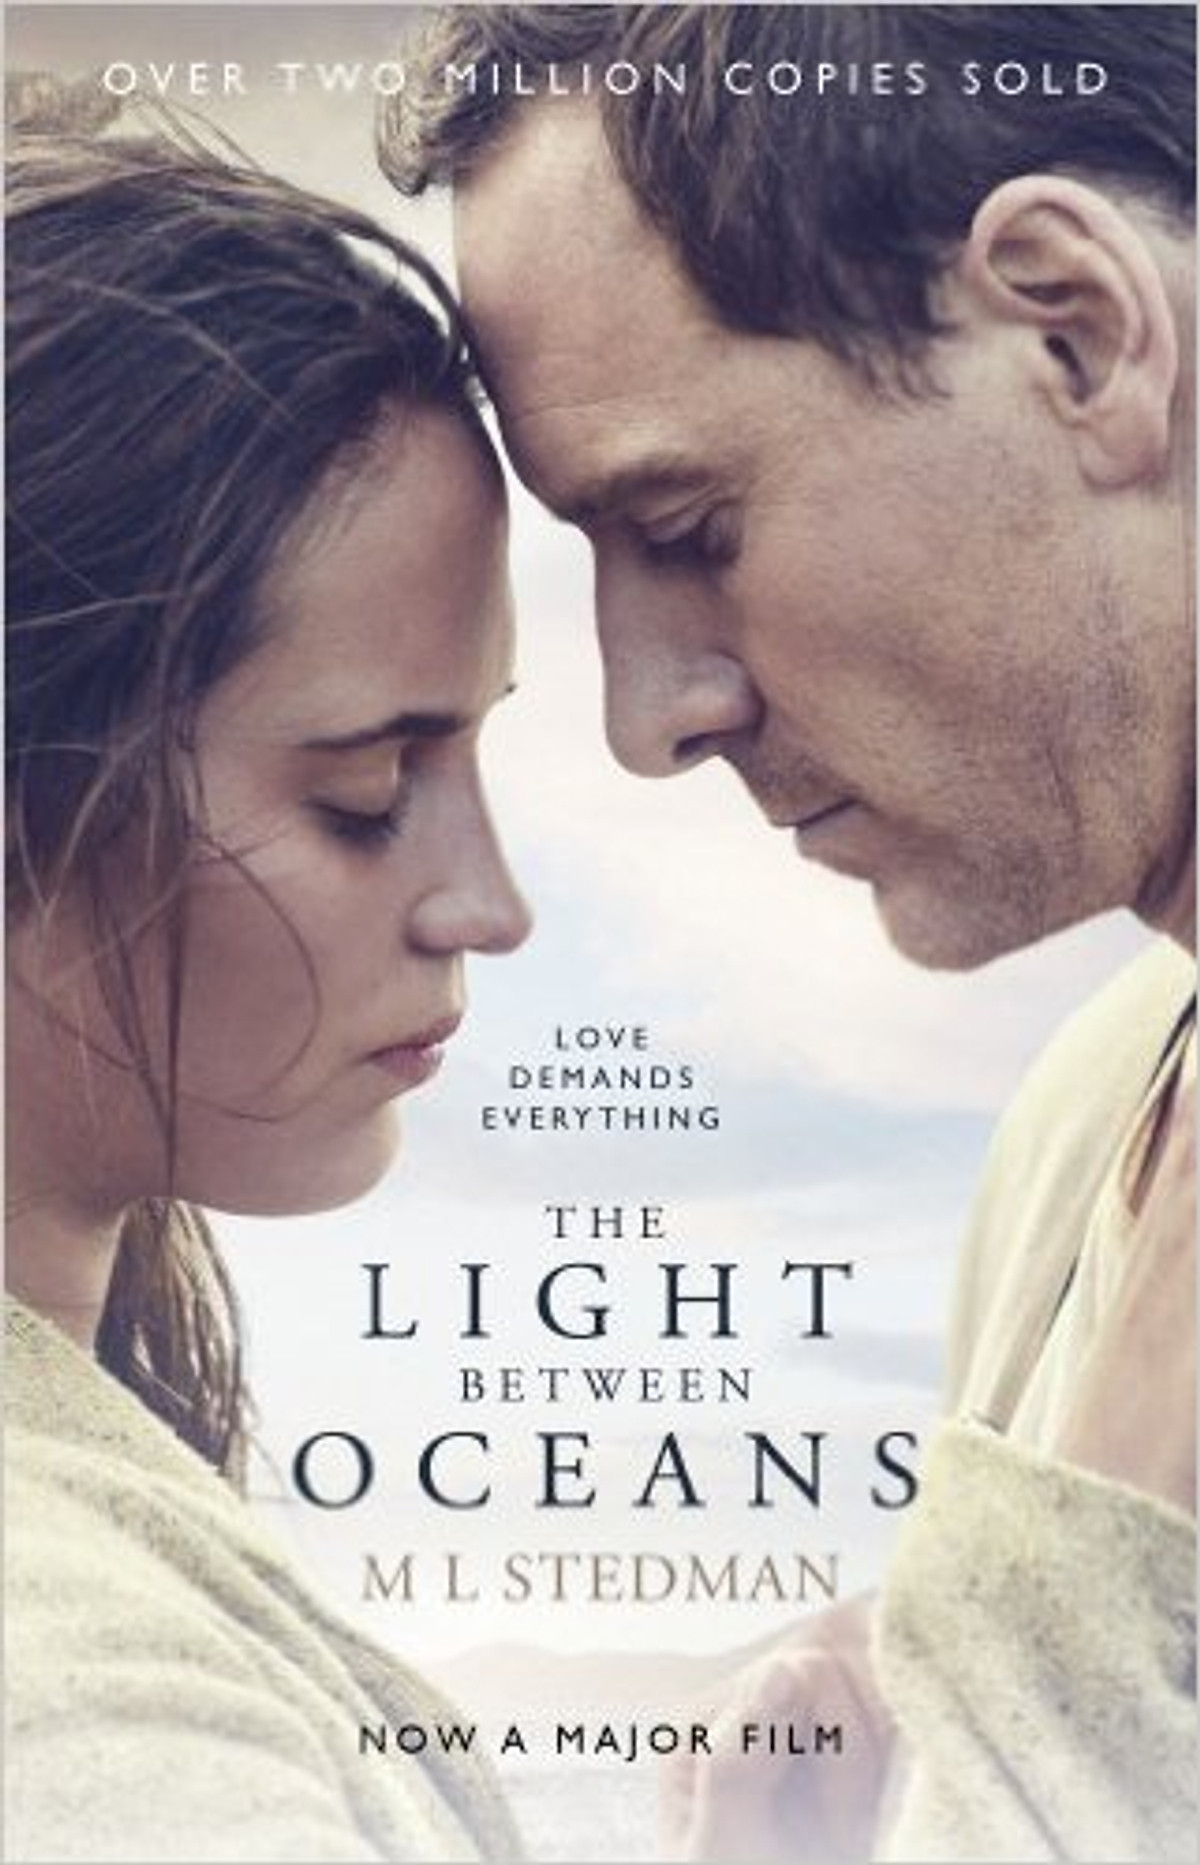 The Light Between Oceans - Paperback